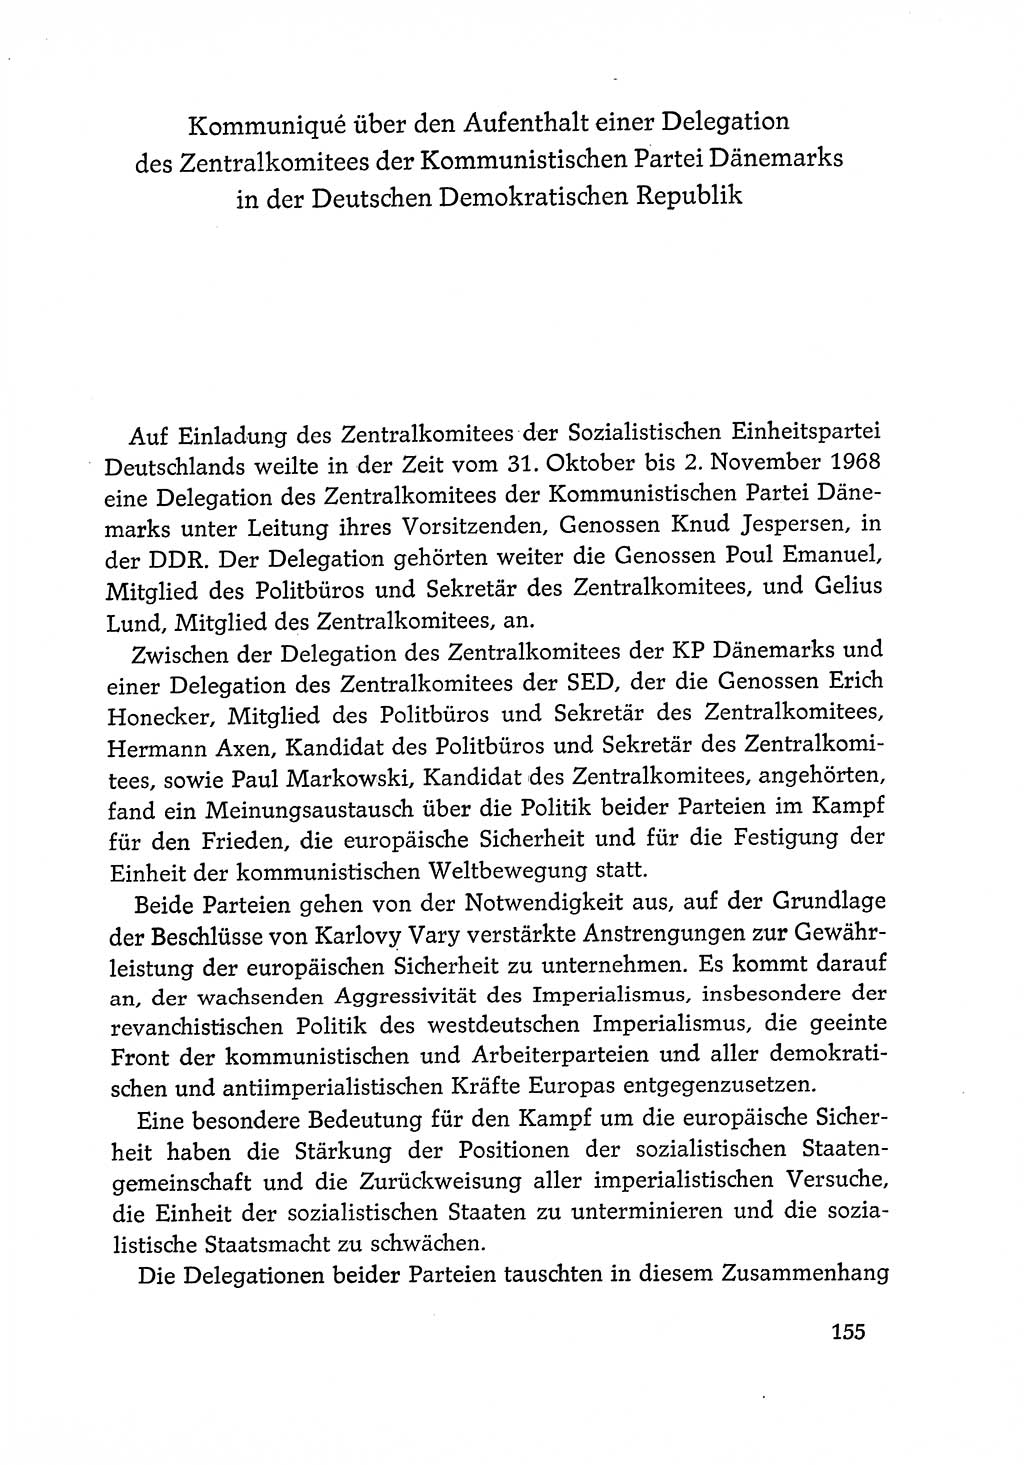 Dokumente der Sozialistischen Einheitspartei Deutschlands (SED) [Deutsche Demokratische Republik (DDR)] 1968-1969, Seite 155 (Dok. SED DDR 1968-1969, S. 155)